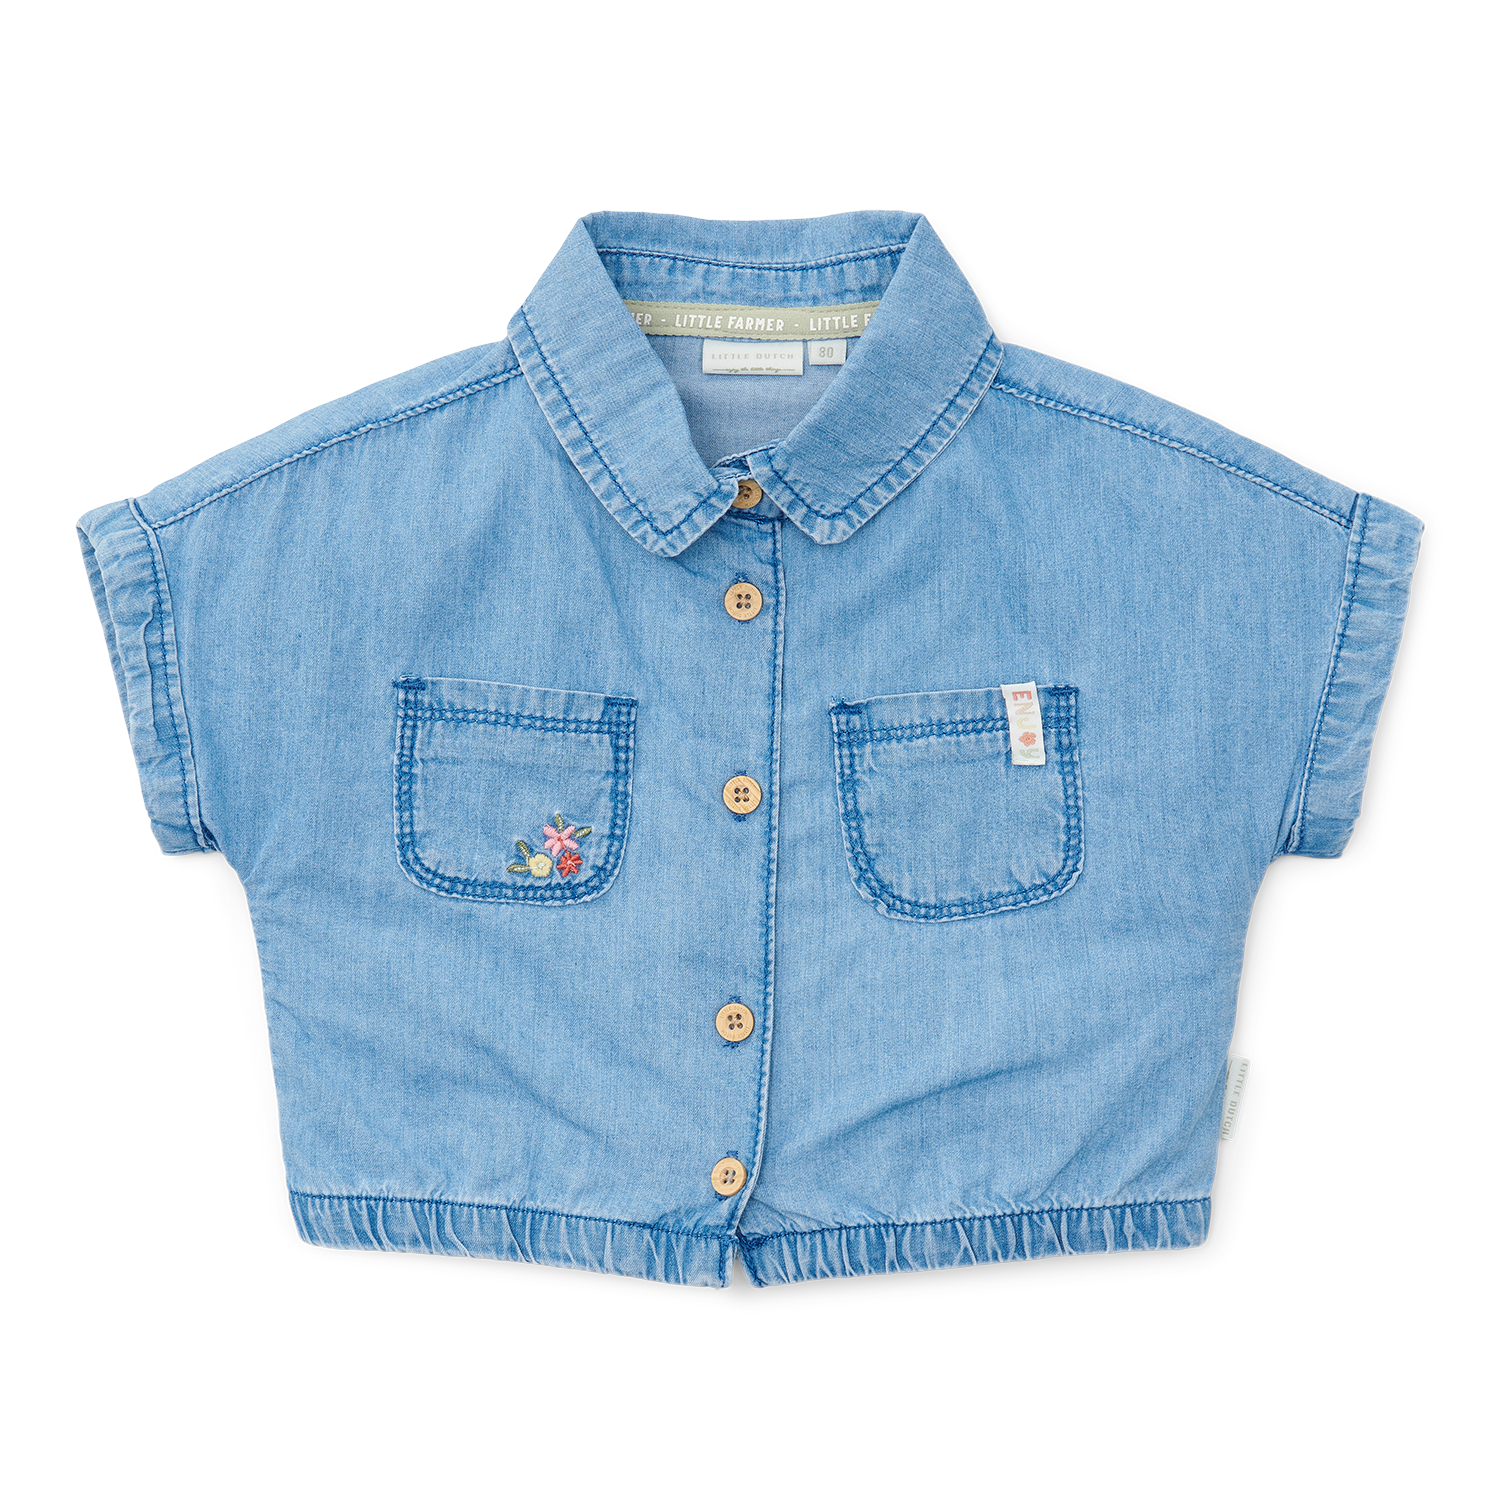 T-Shirt / Bluse Denim Little Farm jeans (Gr. 86)